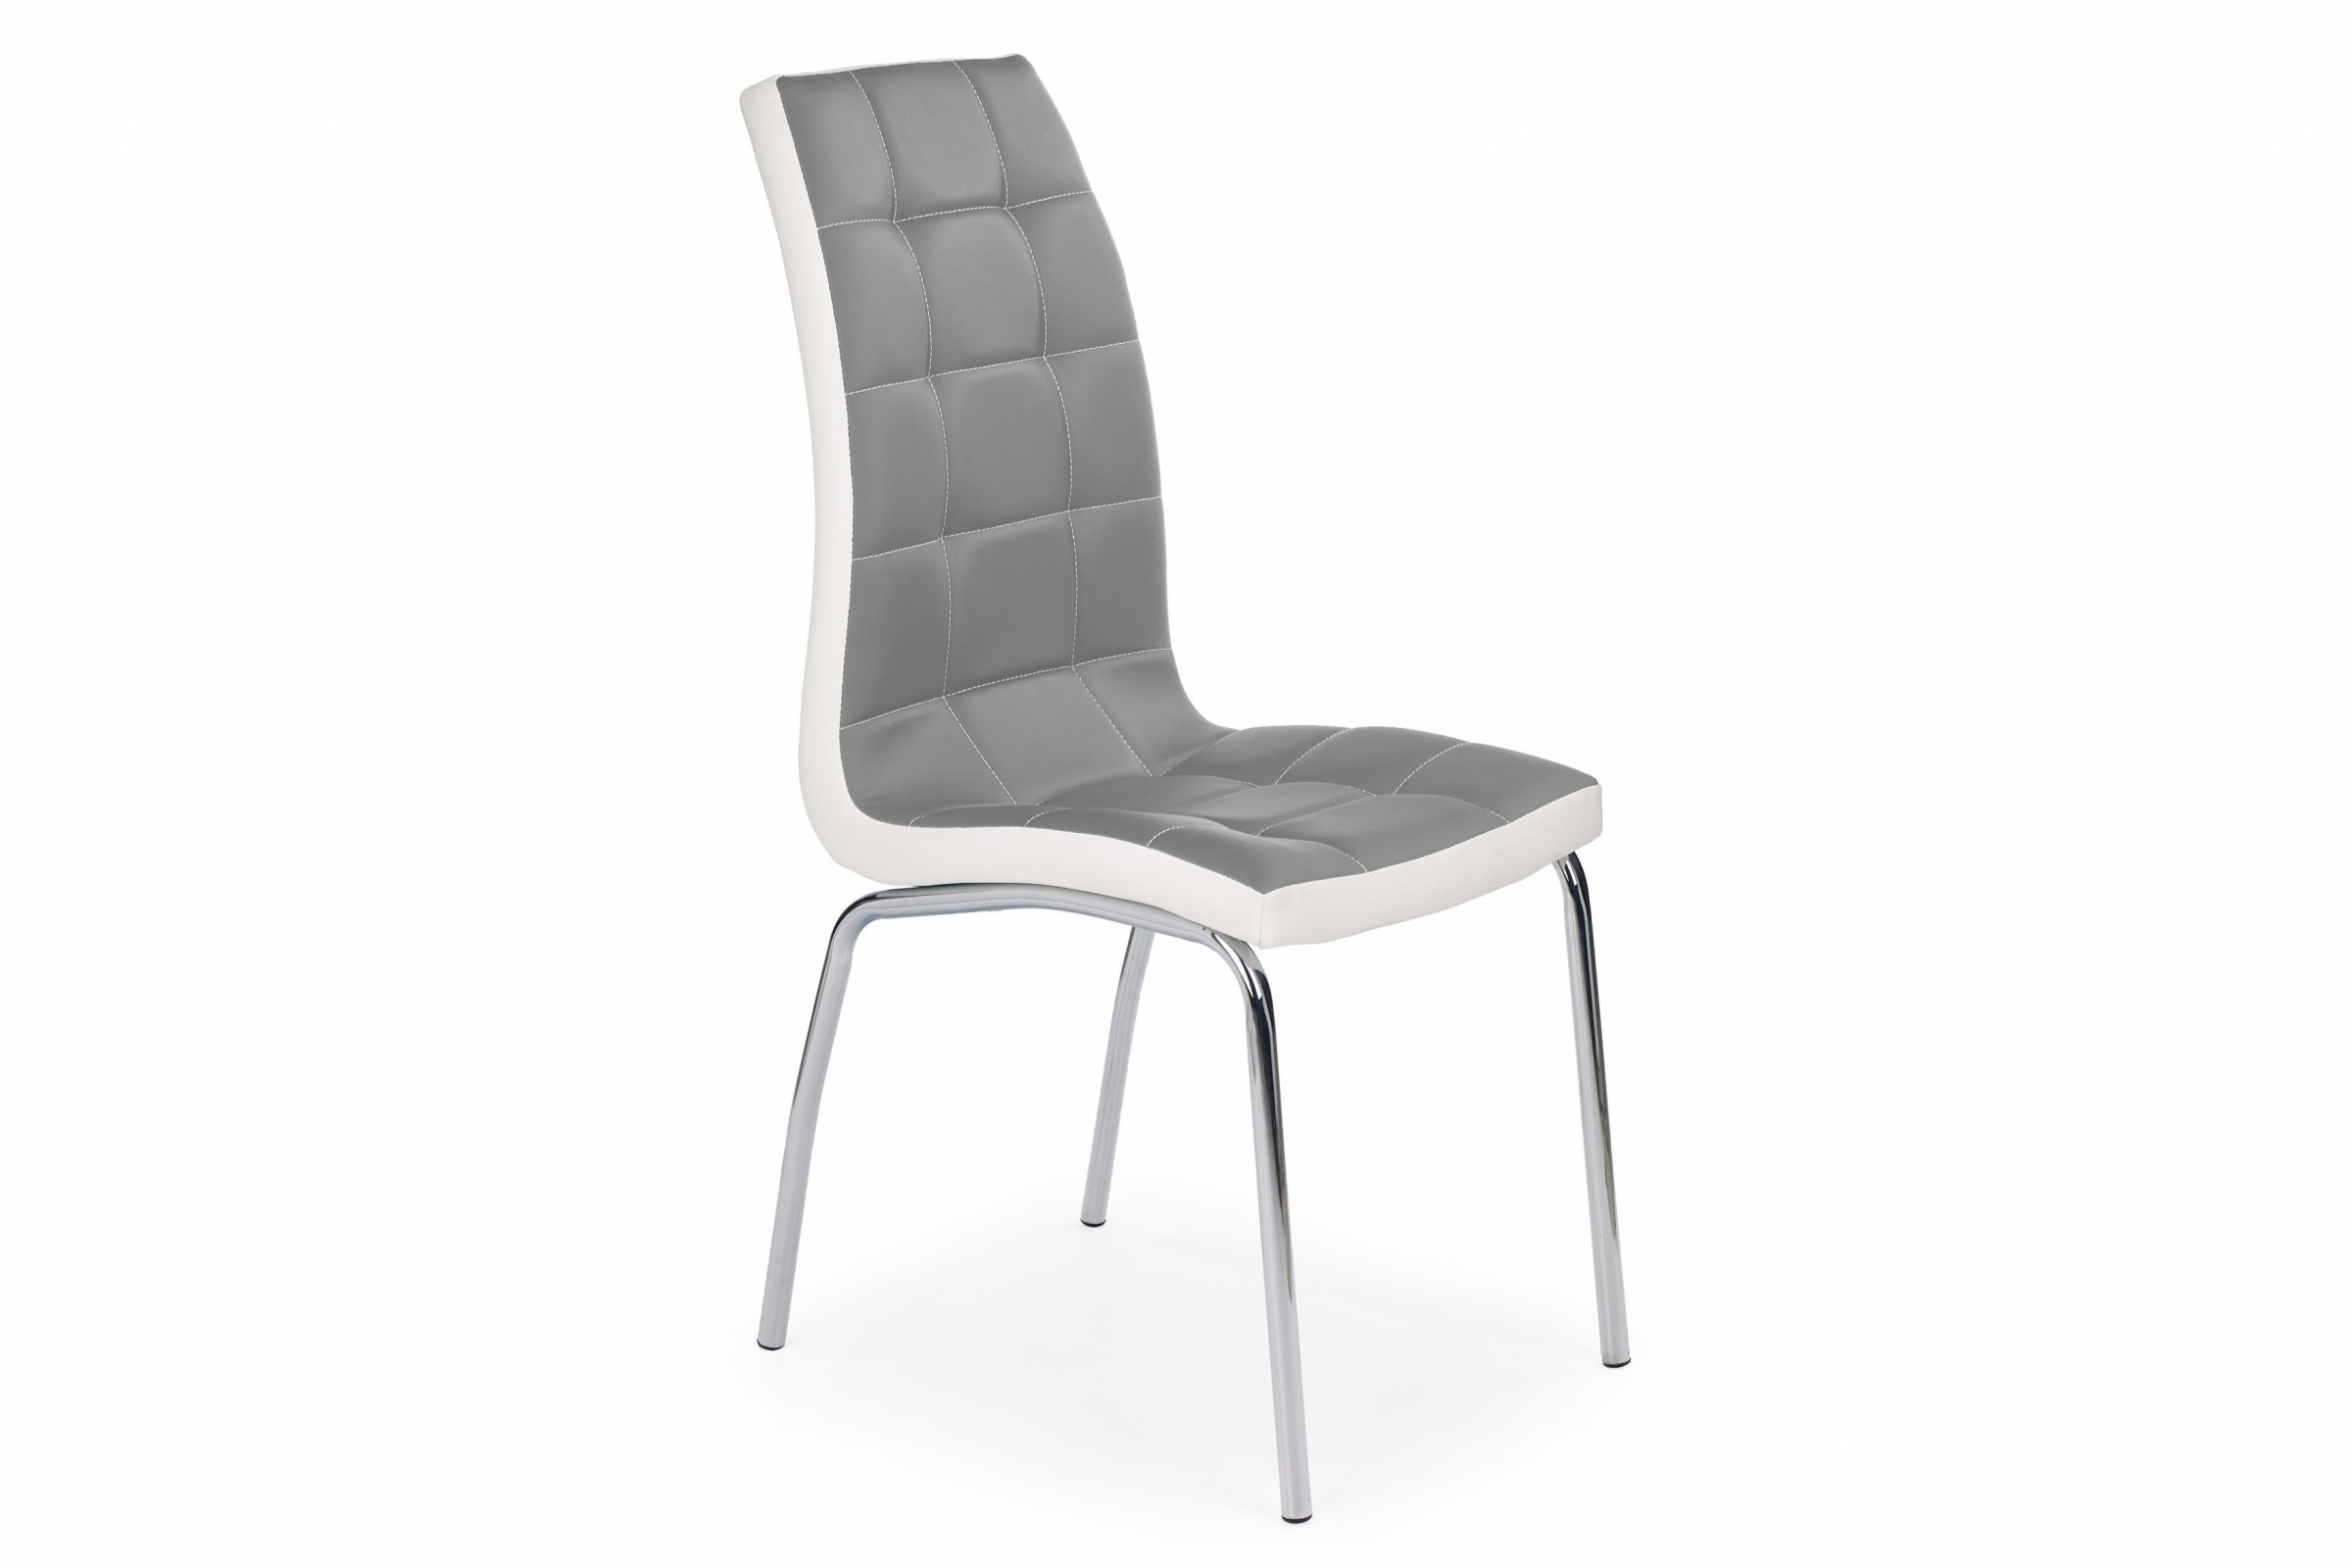 Čalouněné židle K186 - popelová / bílá čalouněné židle K186 z metalowymi nogami - Popelový / Bílý